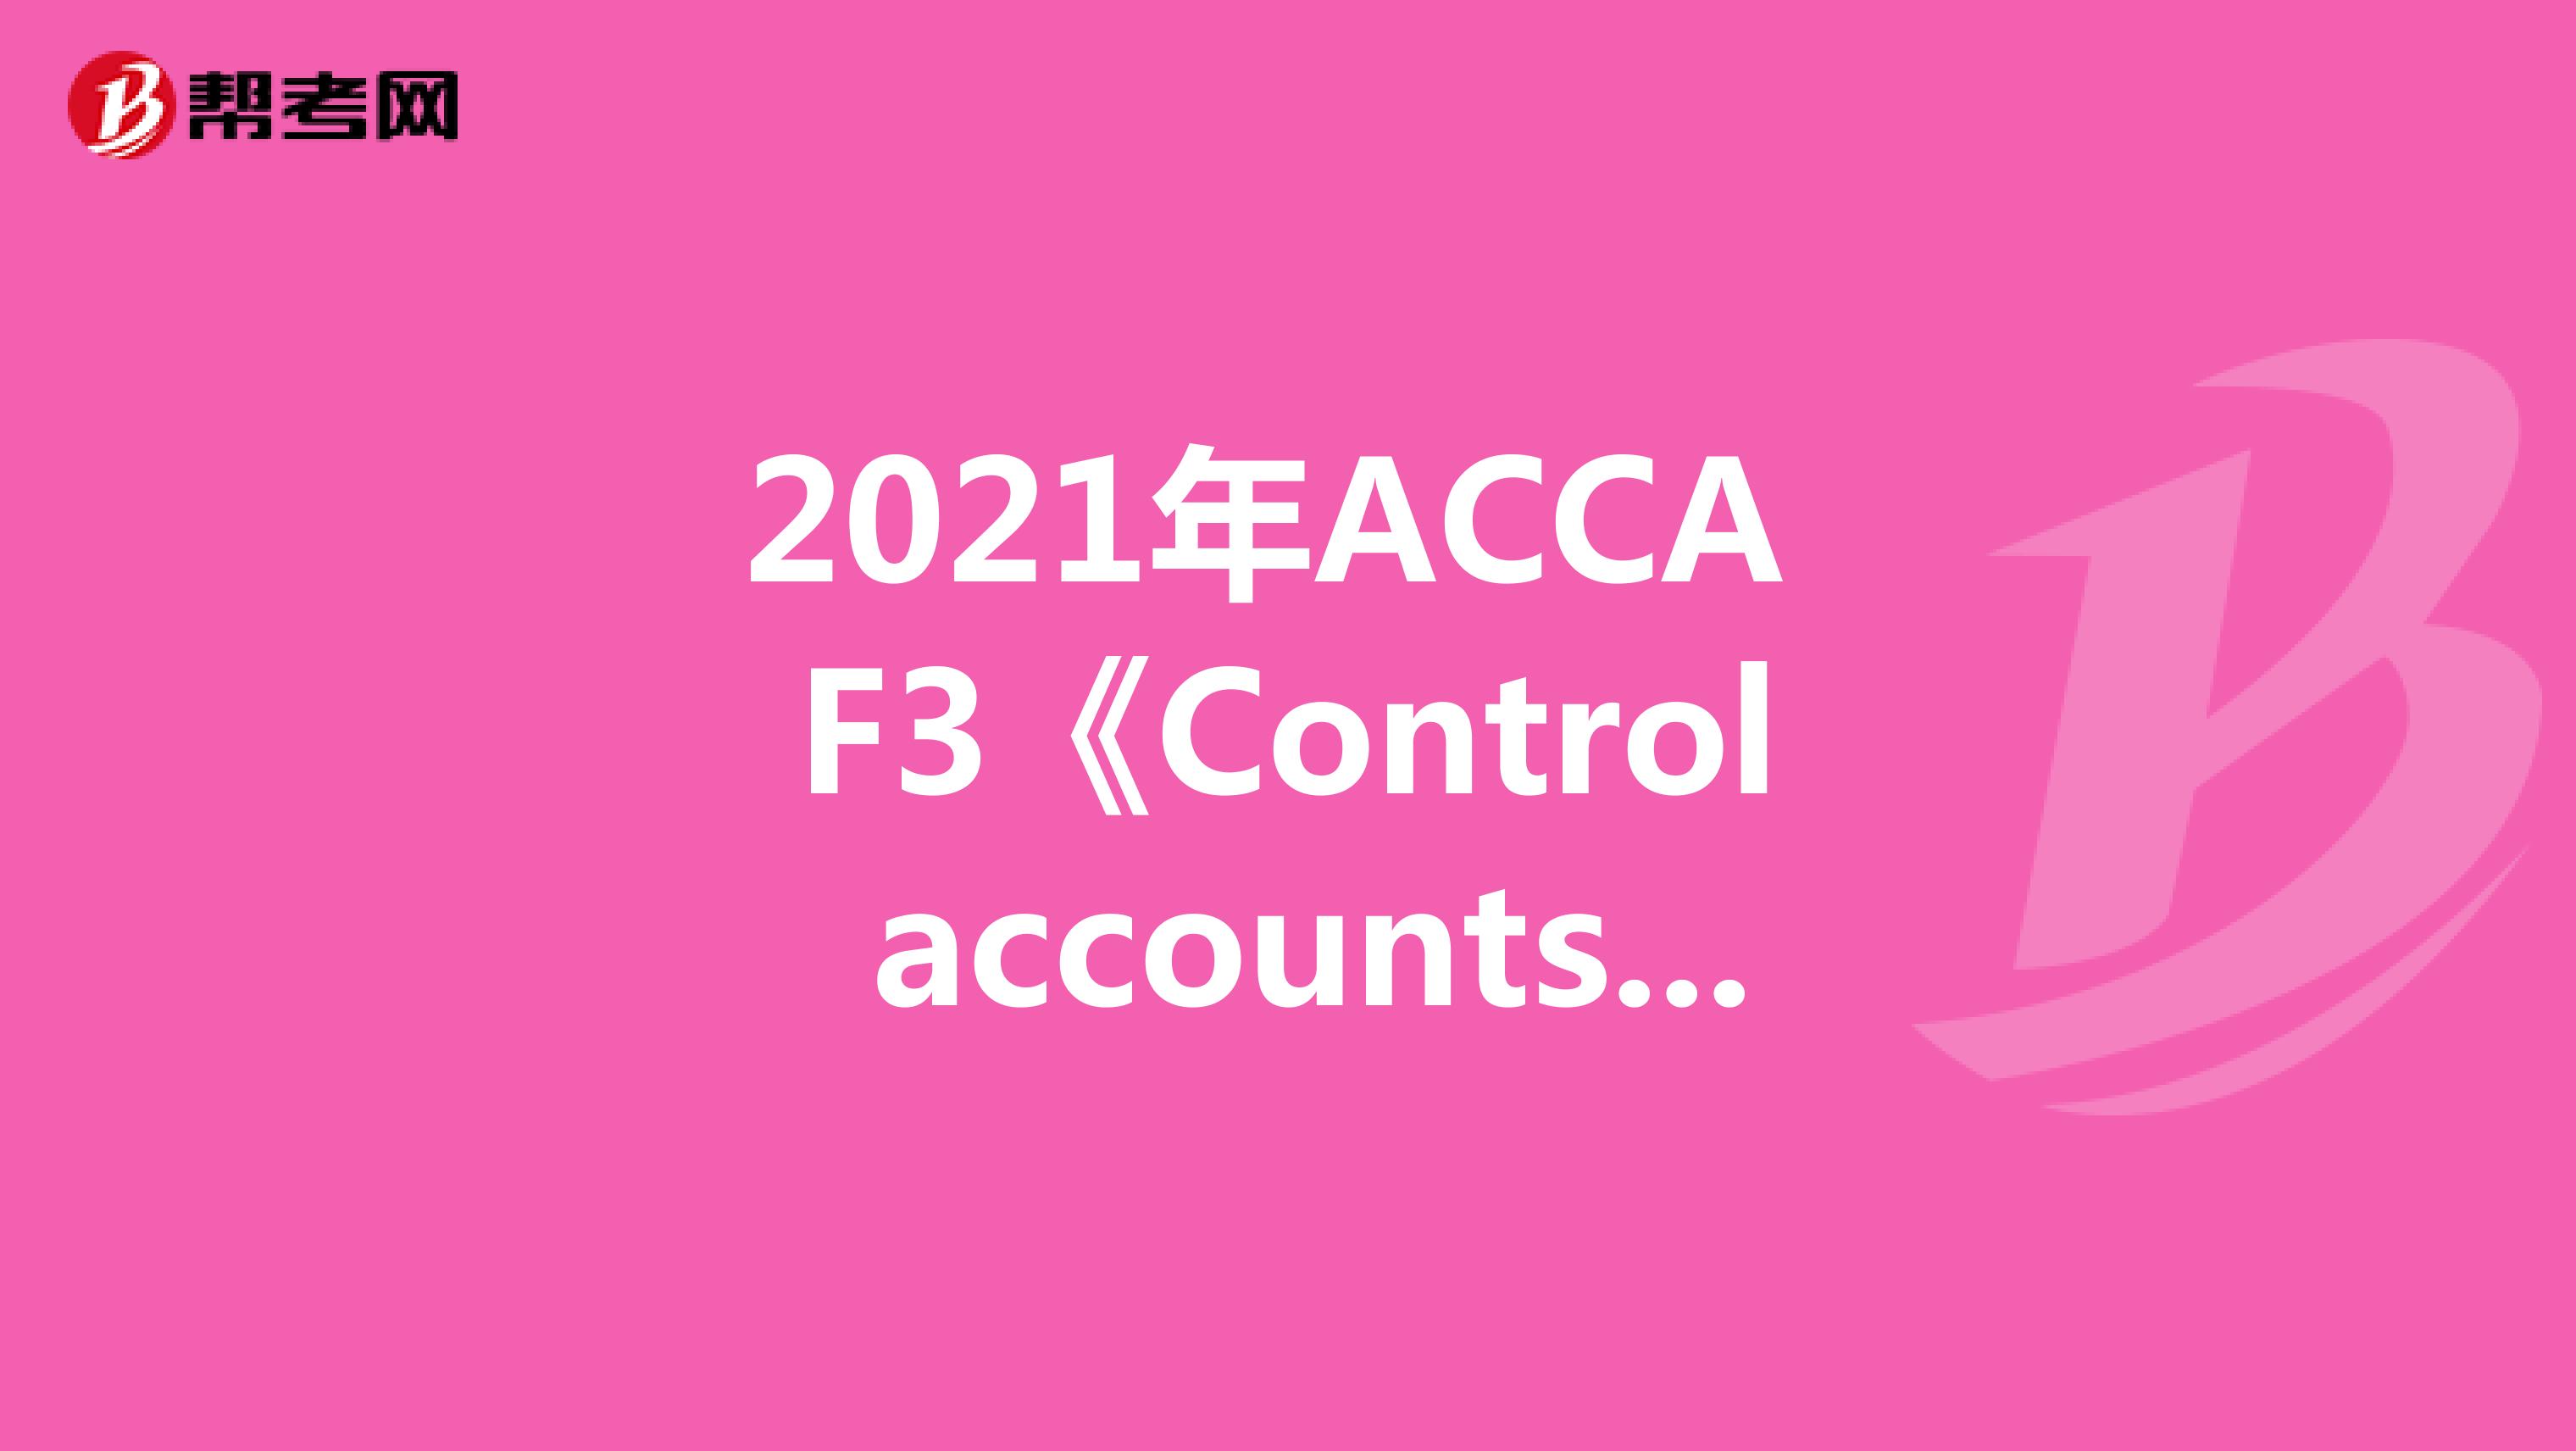 2021年ACCA F3《Control accounts》常考知识点